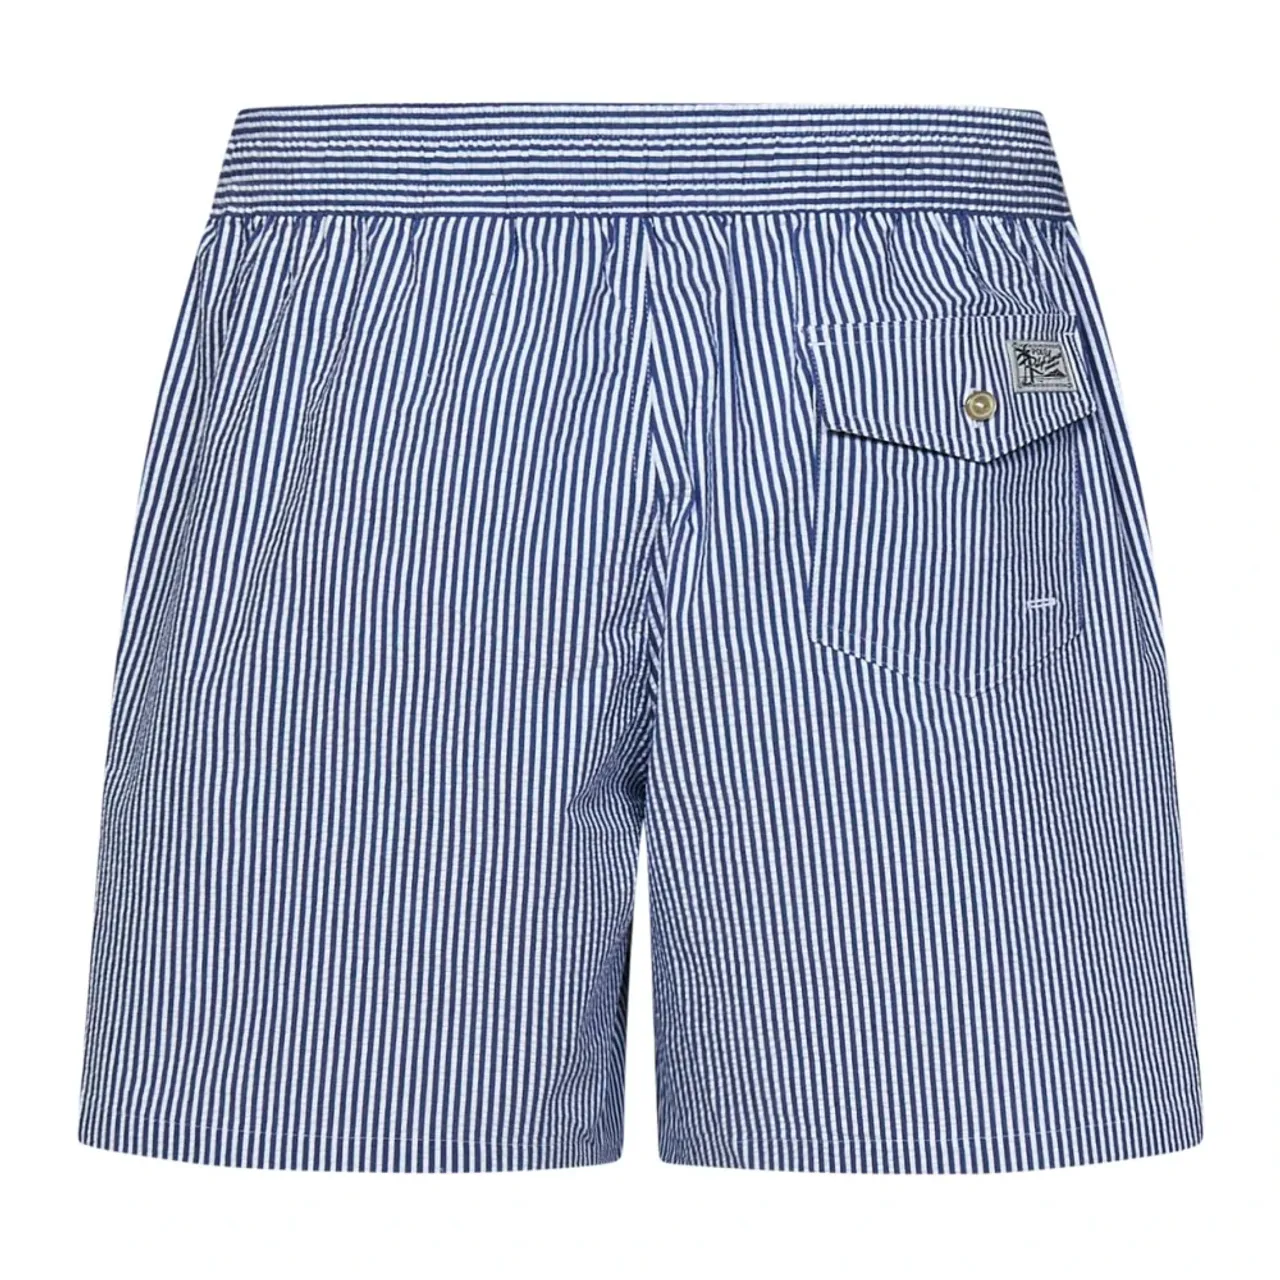 Blaue Meer Badebekleidung Elastischer Bund Shorts Polo Ralph Lauren